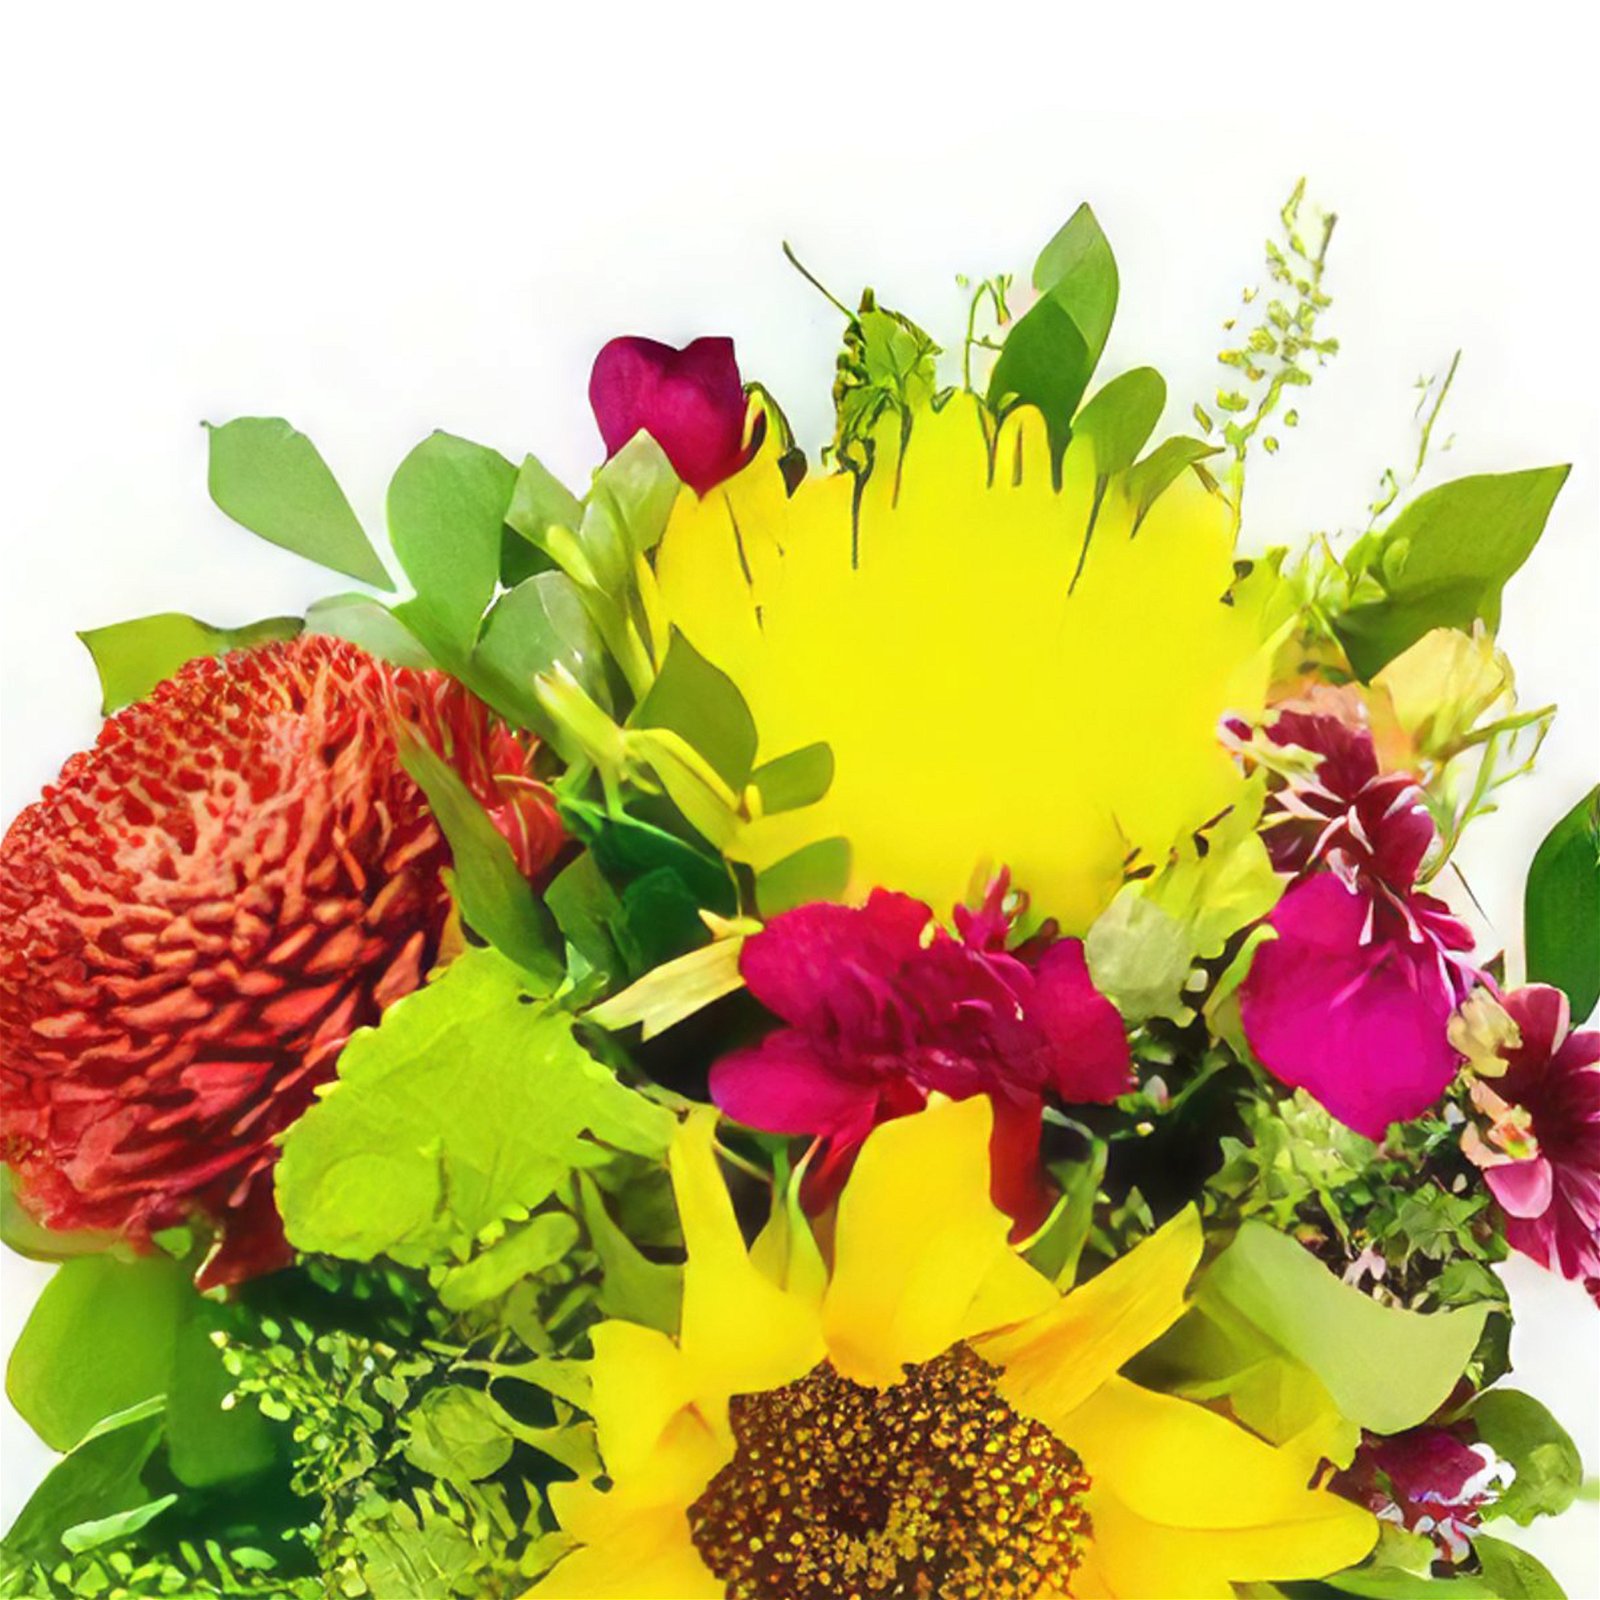 Hatillo Blumen Florist- Frühlingsliebe Bouquet/Blumenschmuck